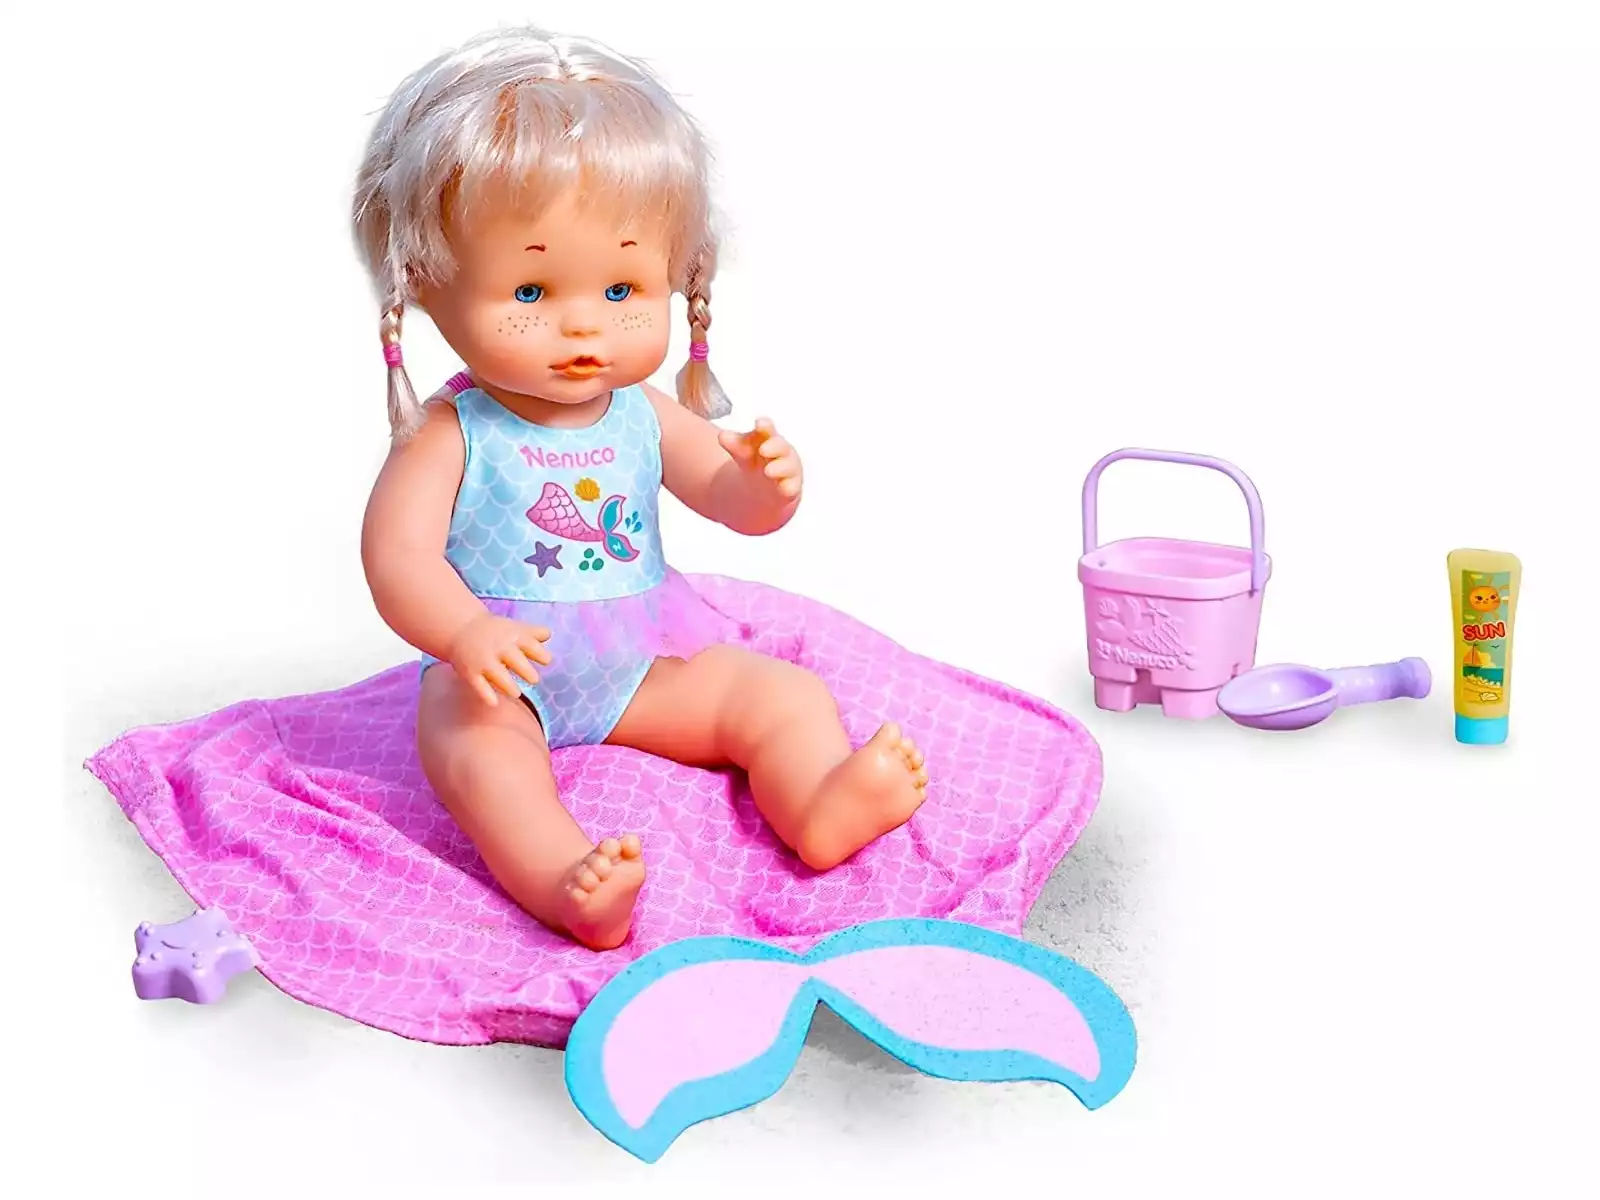 Nenuco Bebé › Muñecos, ropa accesorios - Juguetilandia